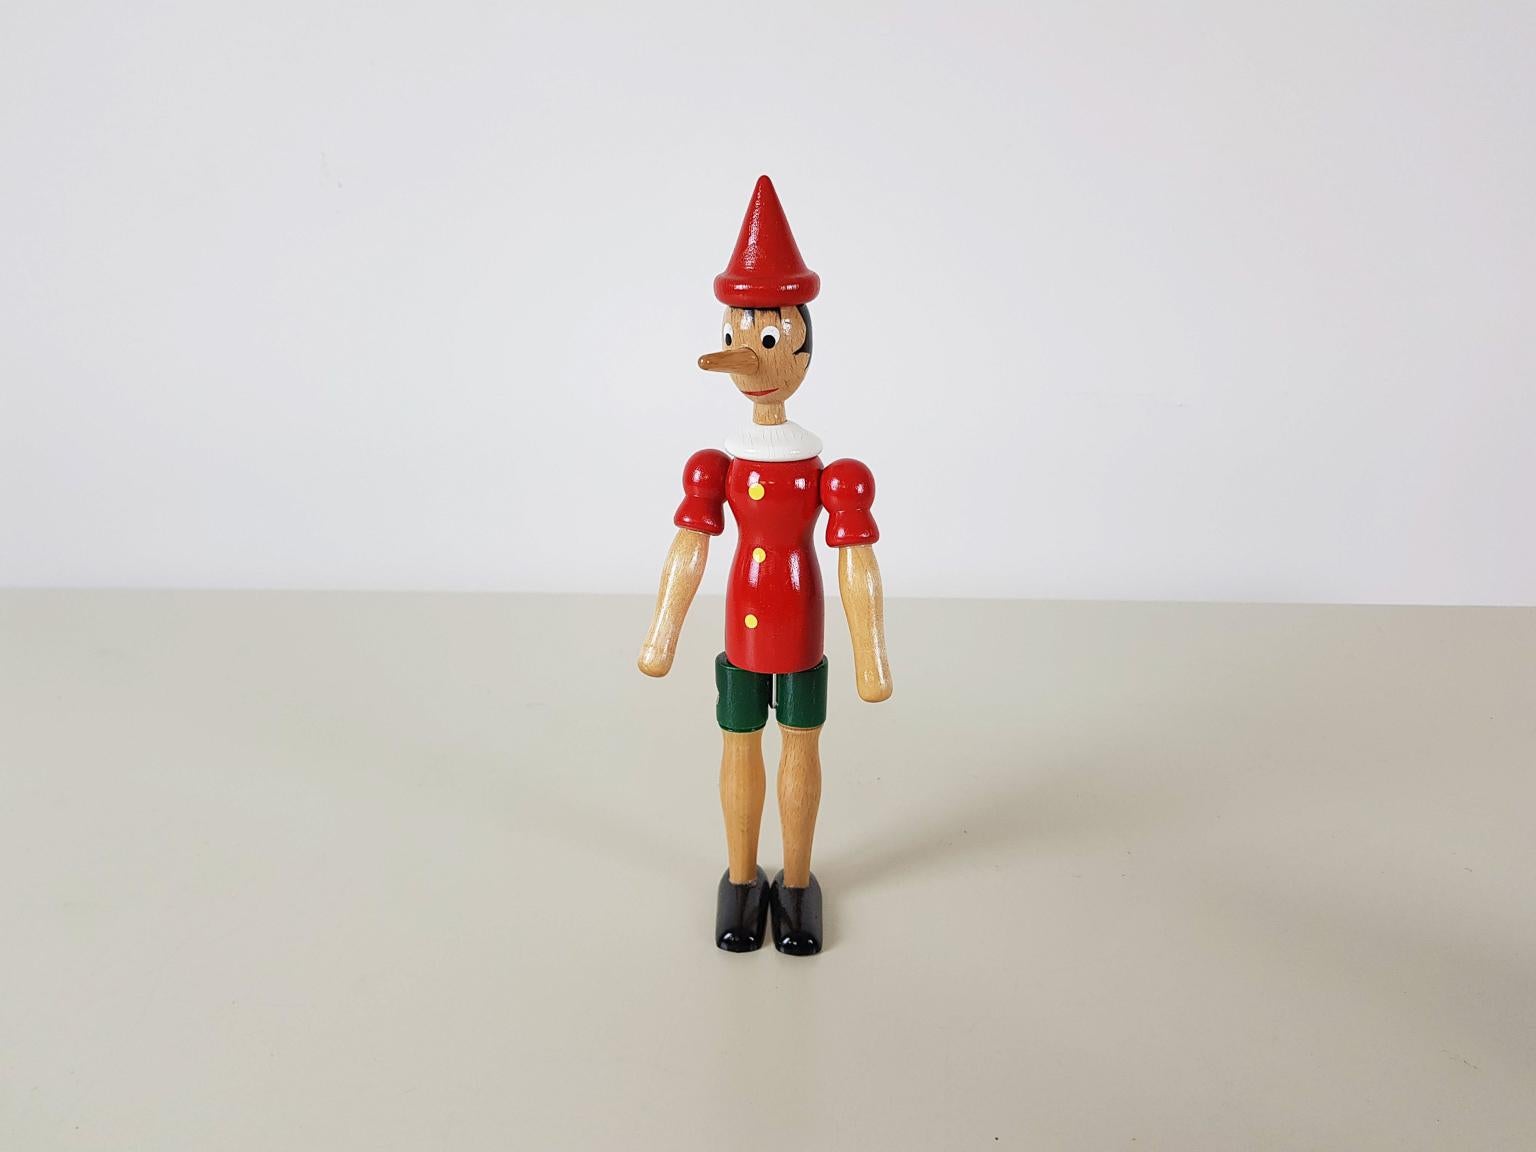 Pinocchio-Spielzeugfigur. So gut wie neu. Die Beine, Arme und der Kopf können bewegt werden.

Maße: Höhe 25 cm.